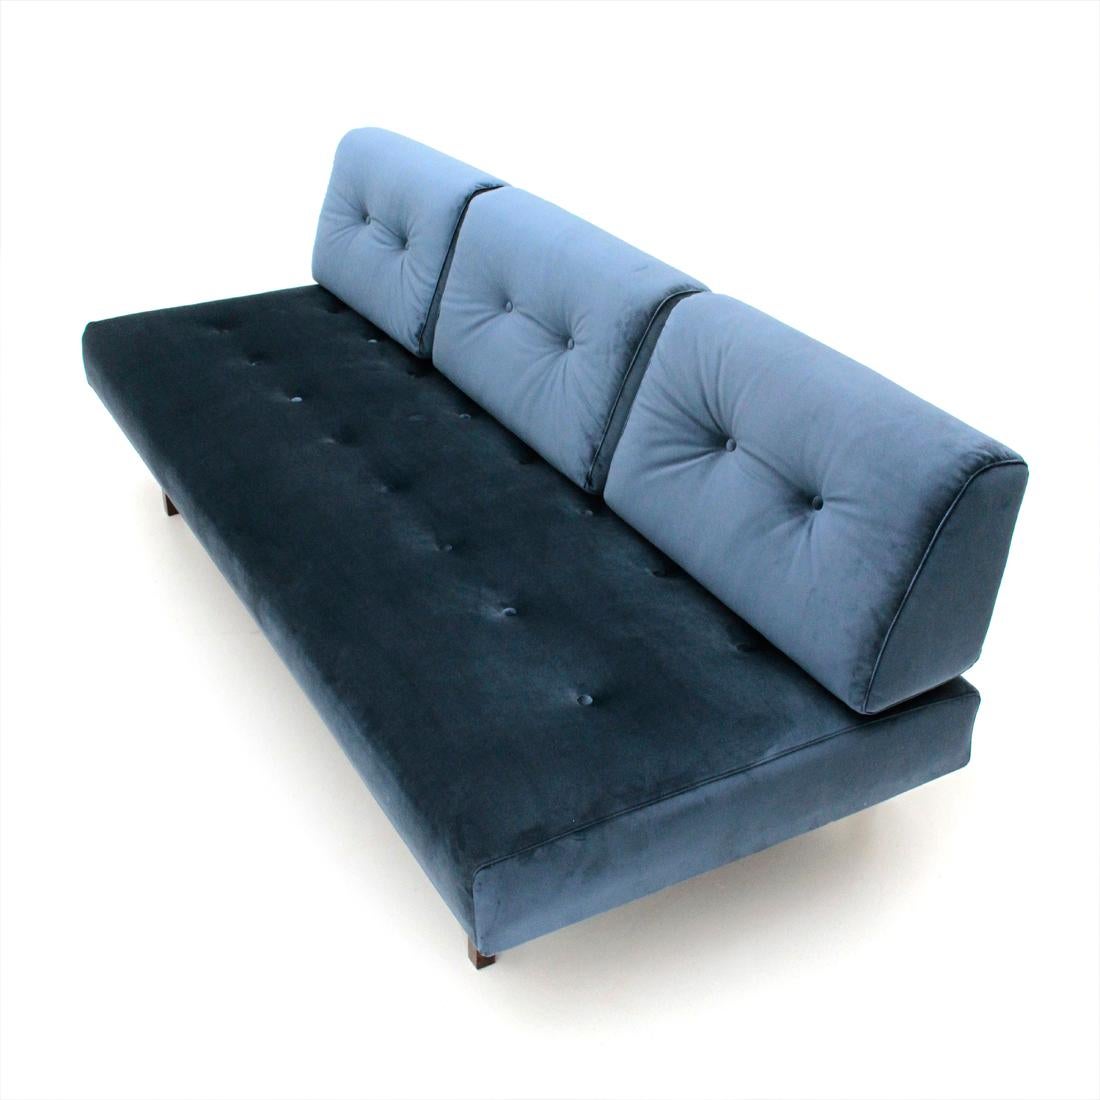 Metal Midcentury Italian Blue Velvet Sofa Model 872 by Gianfranco Frattini for Cassin